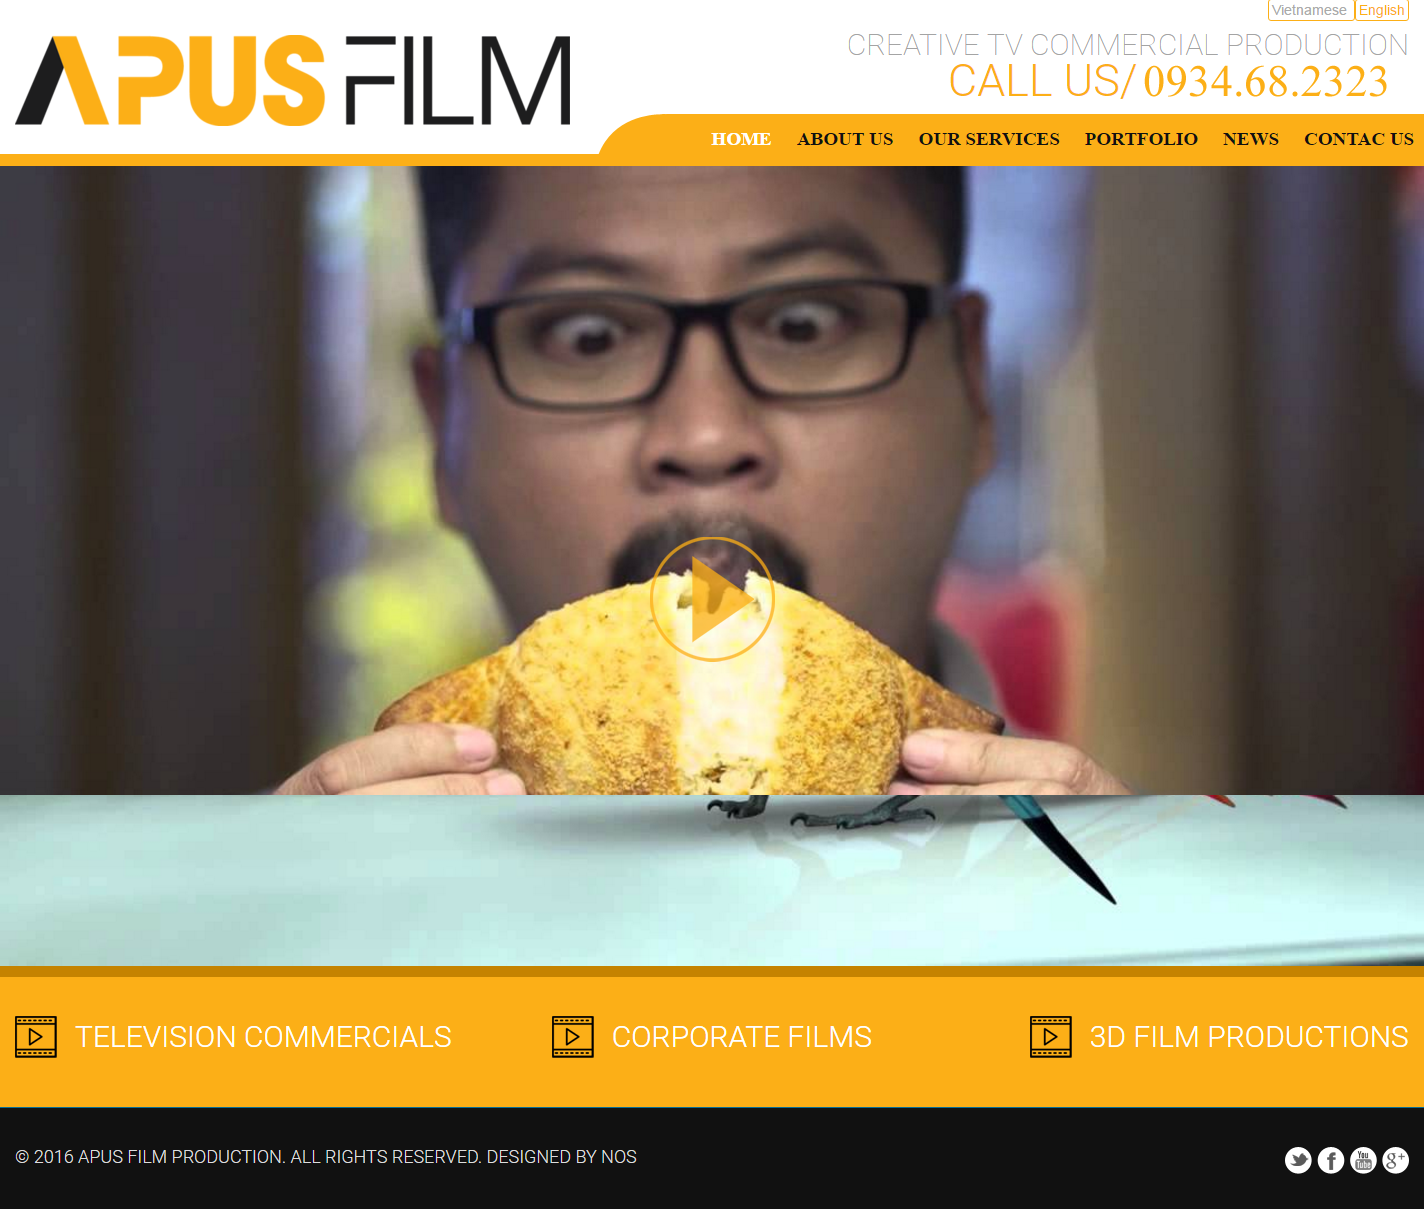 Giao diện website apusfilm với thiết kế hiển thị trên máy tính